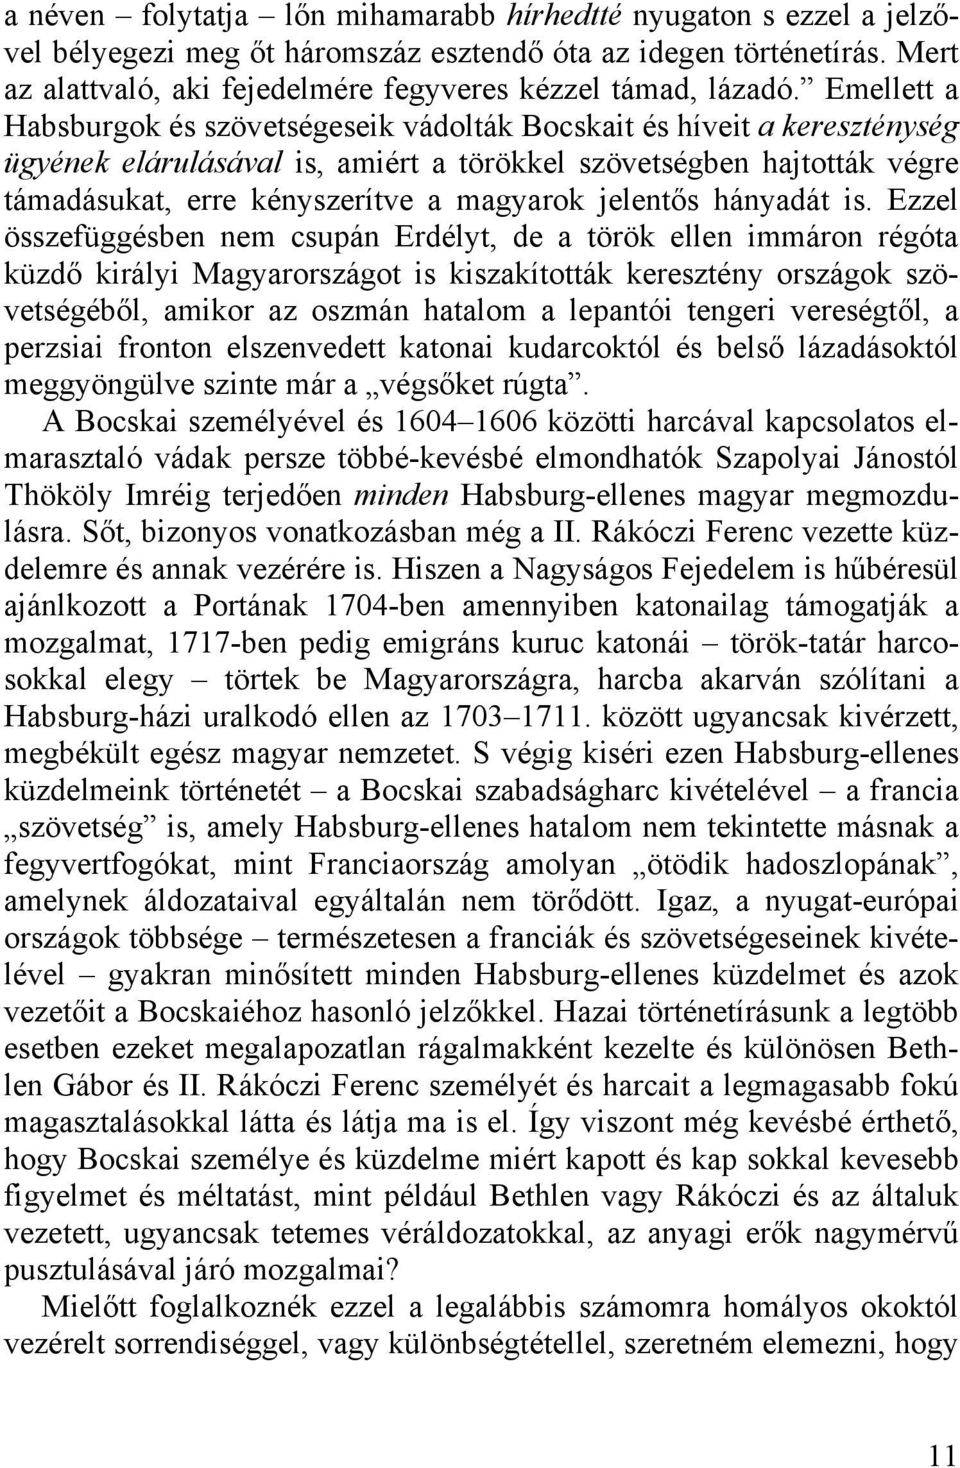 Emellett a Habsburgok és szövetségeseik vádolták Bocskait és híveit a kereszténység ügyének elárulásával is, amiért a törökkel szövetségben hajtották végre támadásukat, erre kényszerítve a magyarok